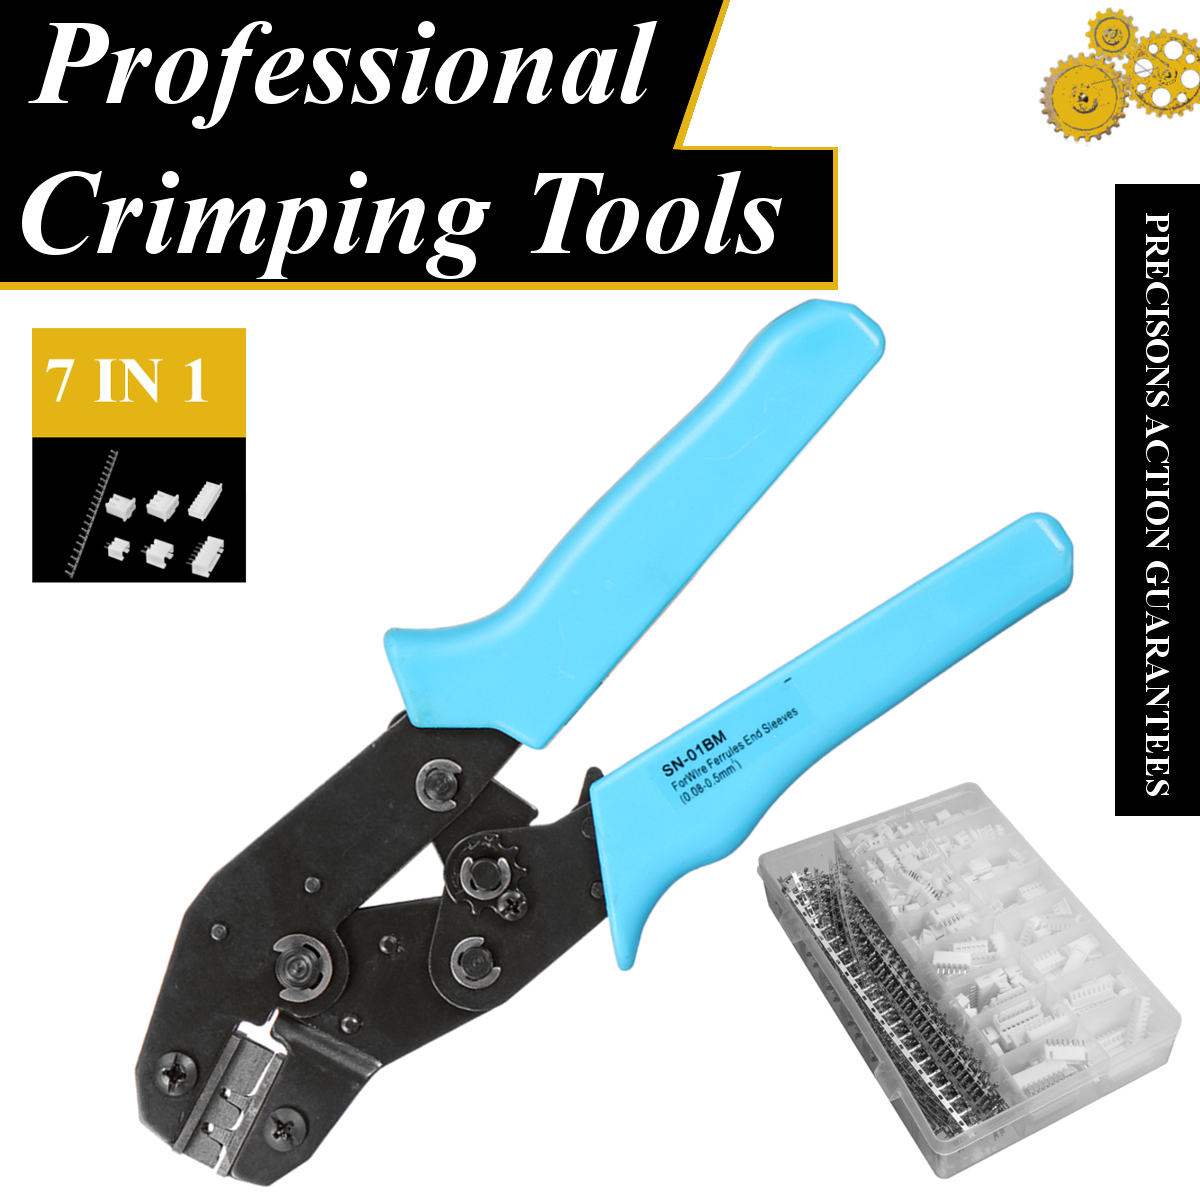 Crimping Tool Crimper Plier new 900pcs JST-XH-2.54mm Connectors Assortment Kit 